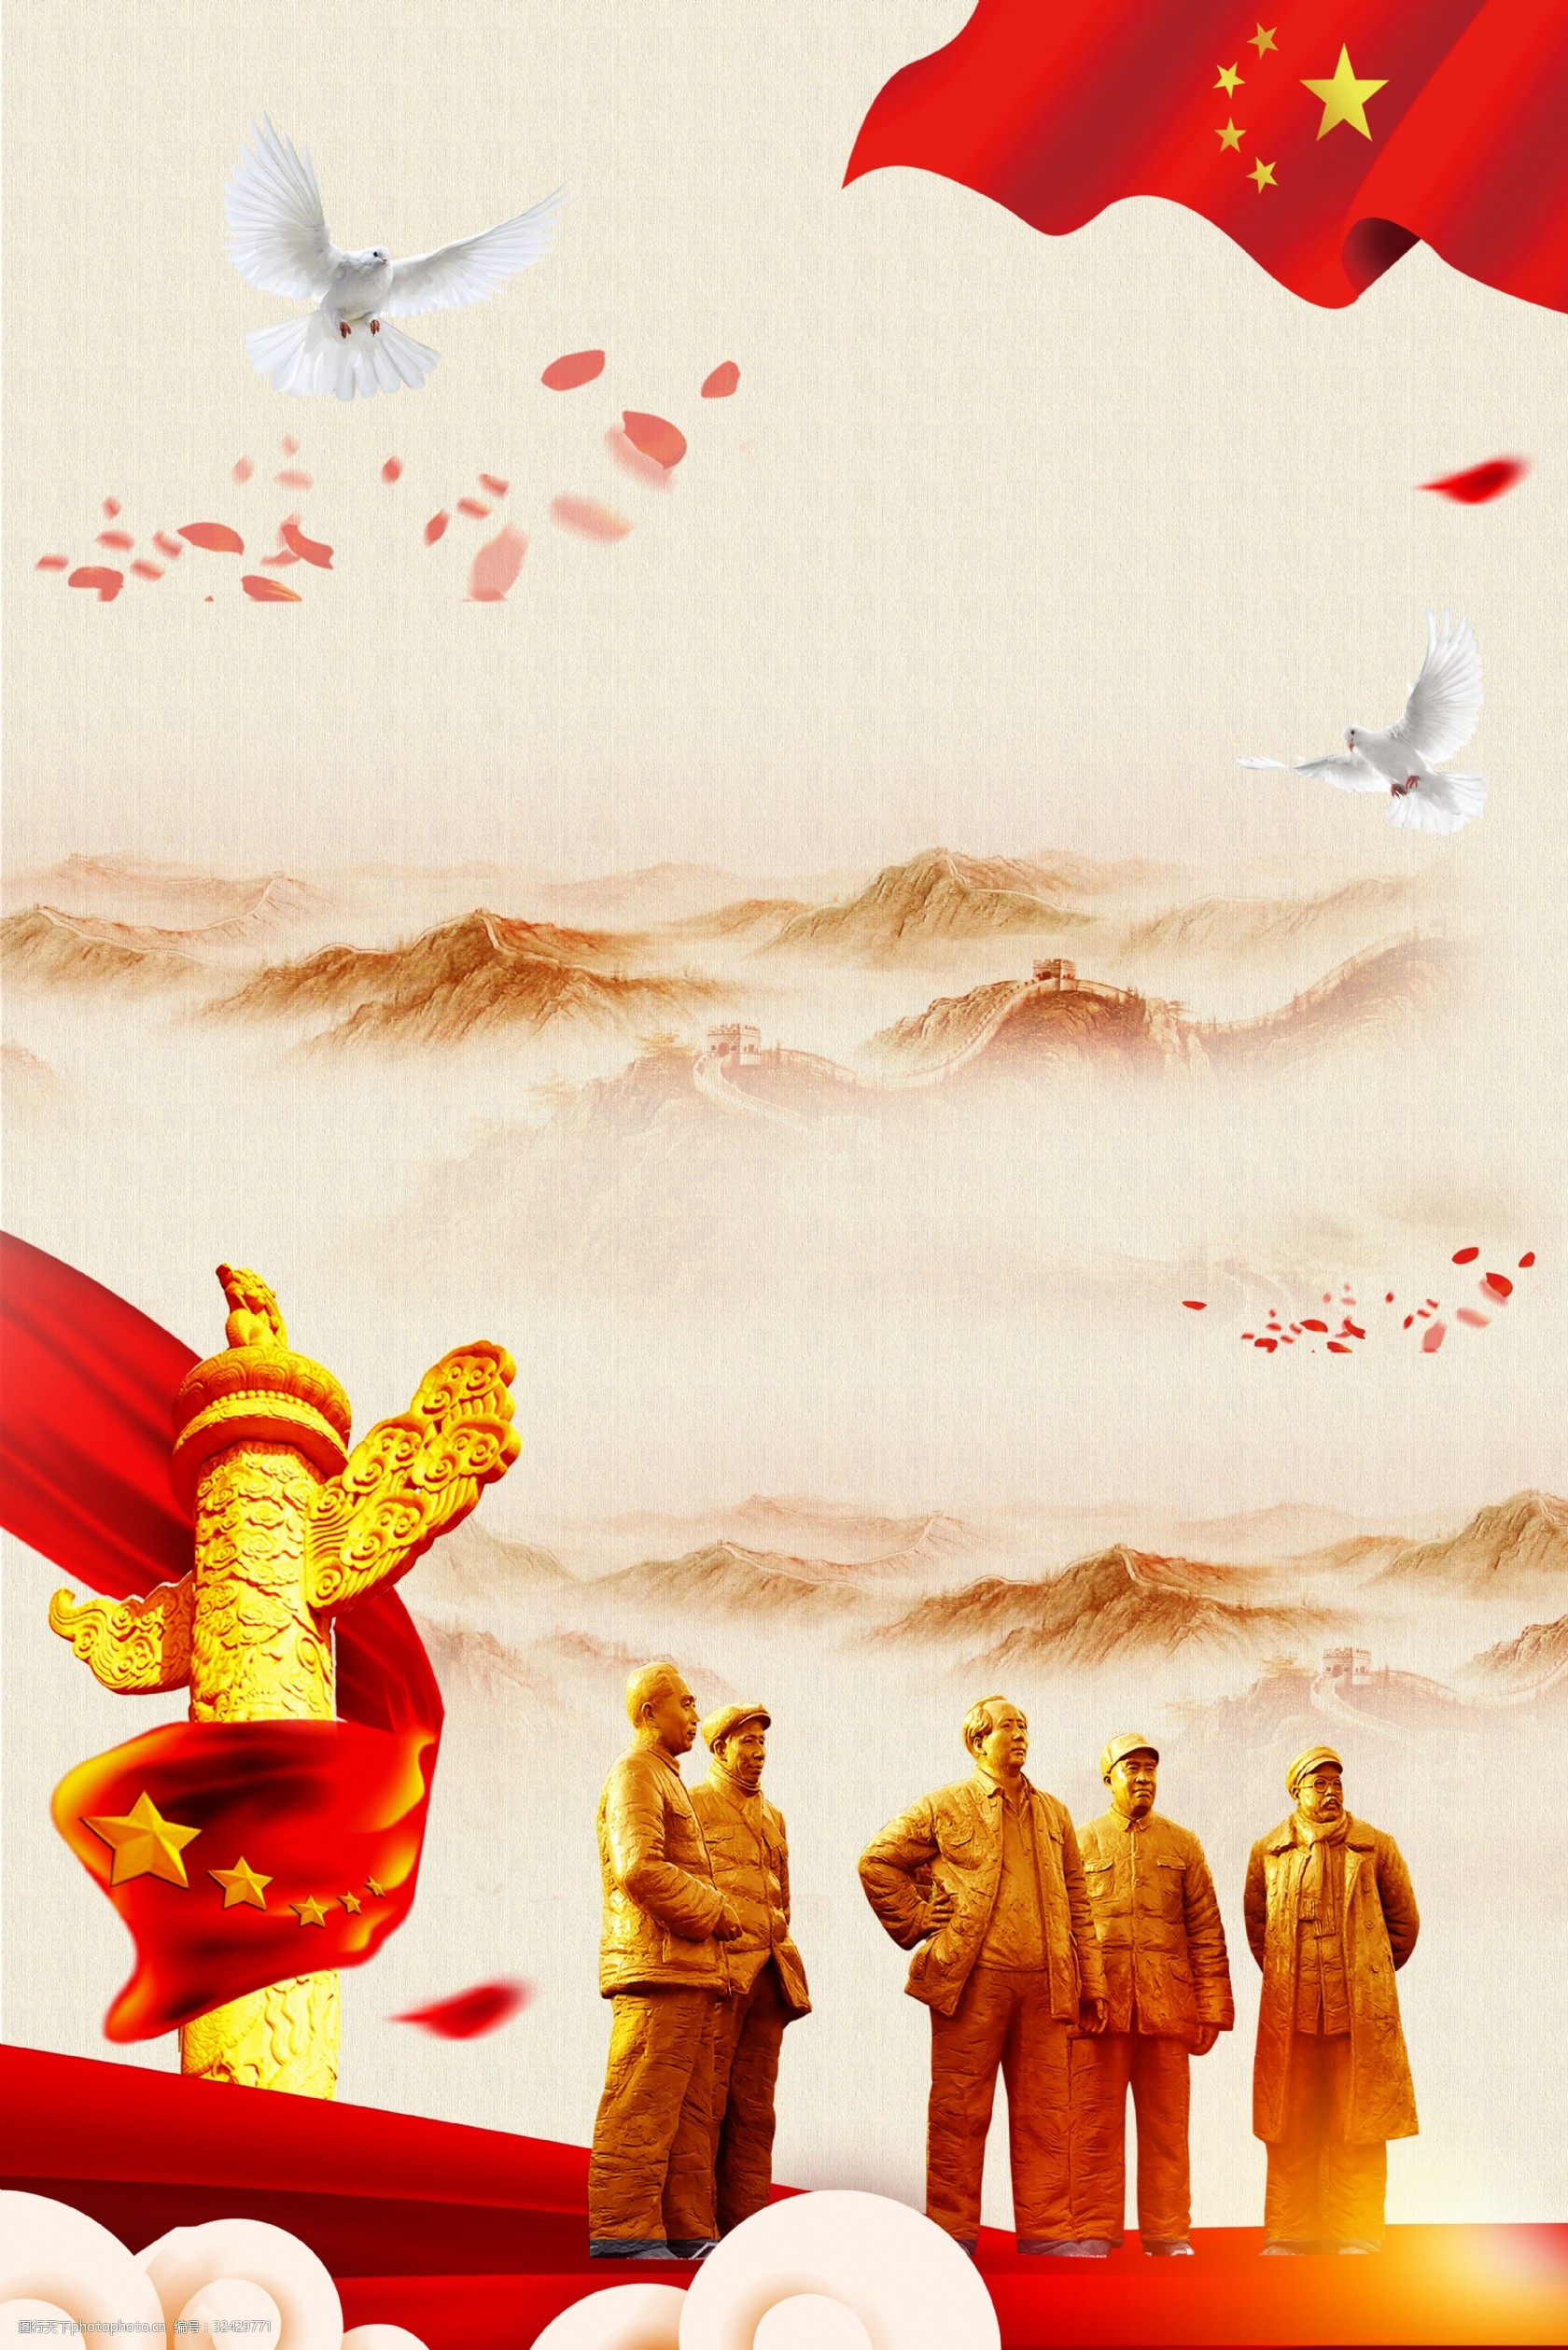 关键词:抗日战争胜利73周年海报 抗日 战争 胜利 73周年 中国红 革命